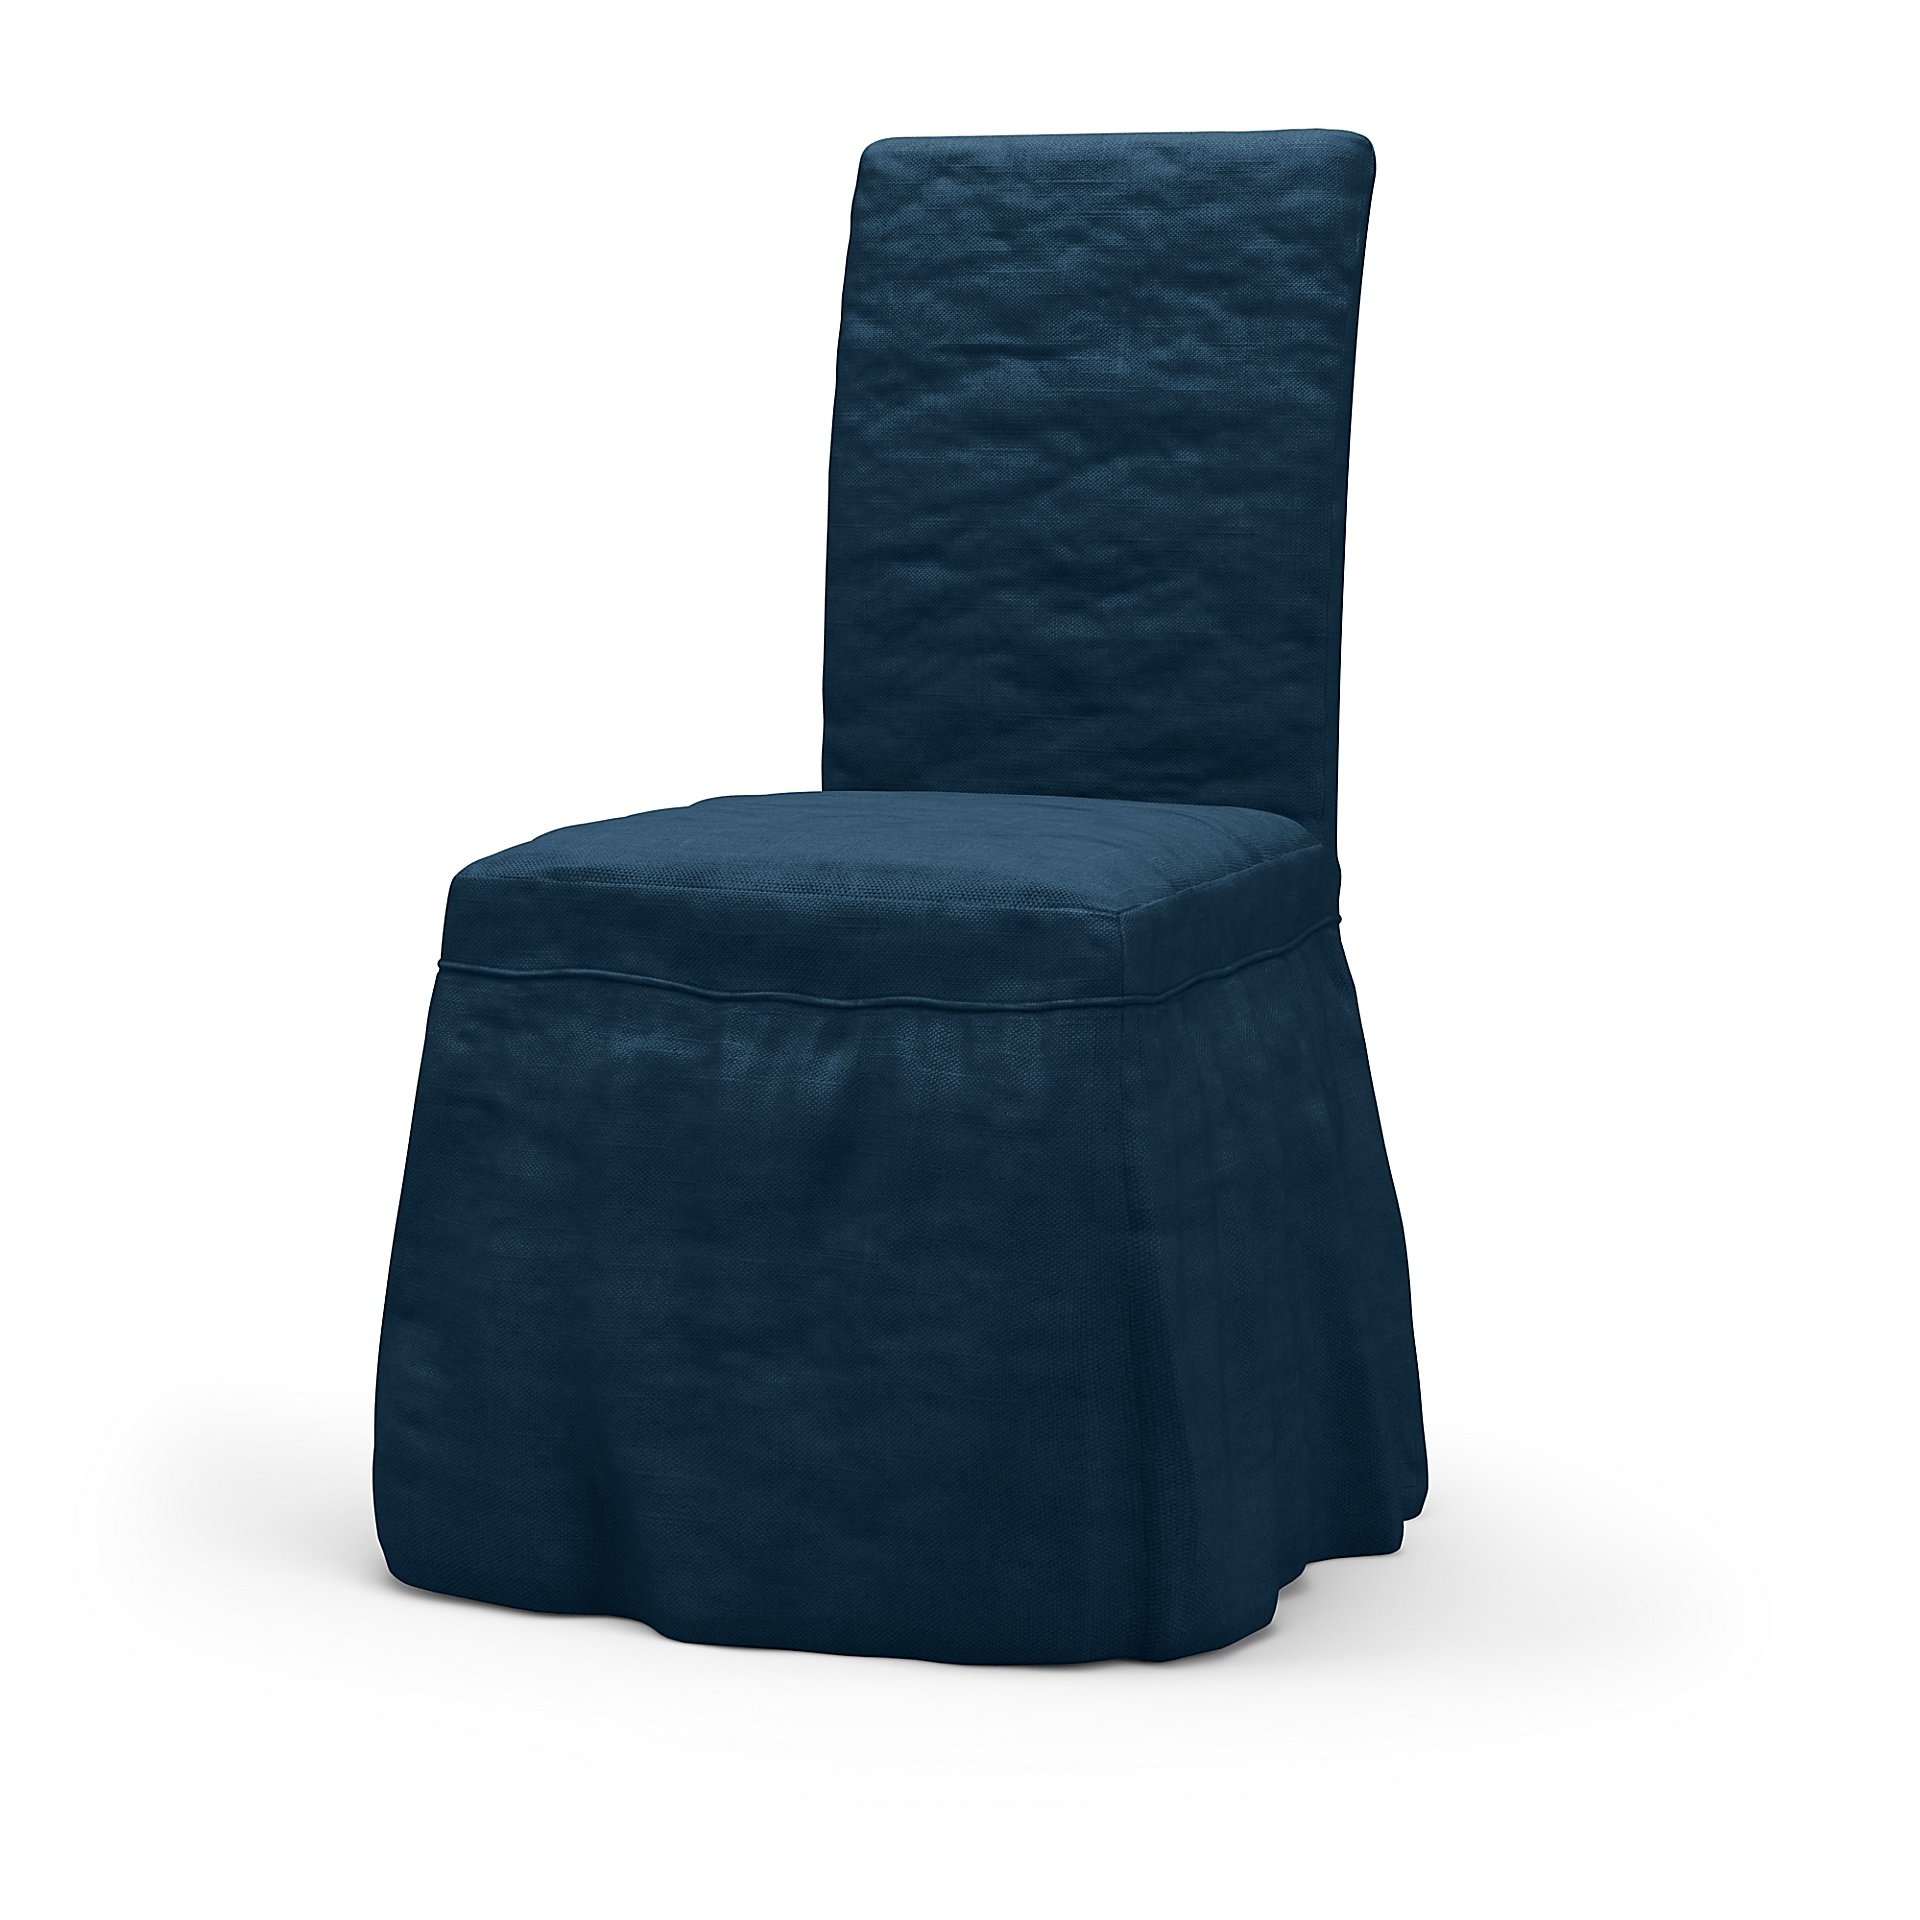 IKEA - Henriksdal Dining Chair Cover Long skirt with Ruffles (Standard model), Midnight, Velvet - Be